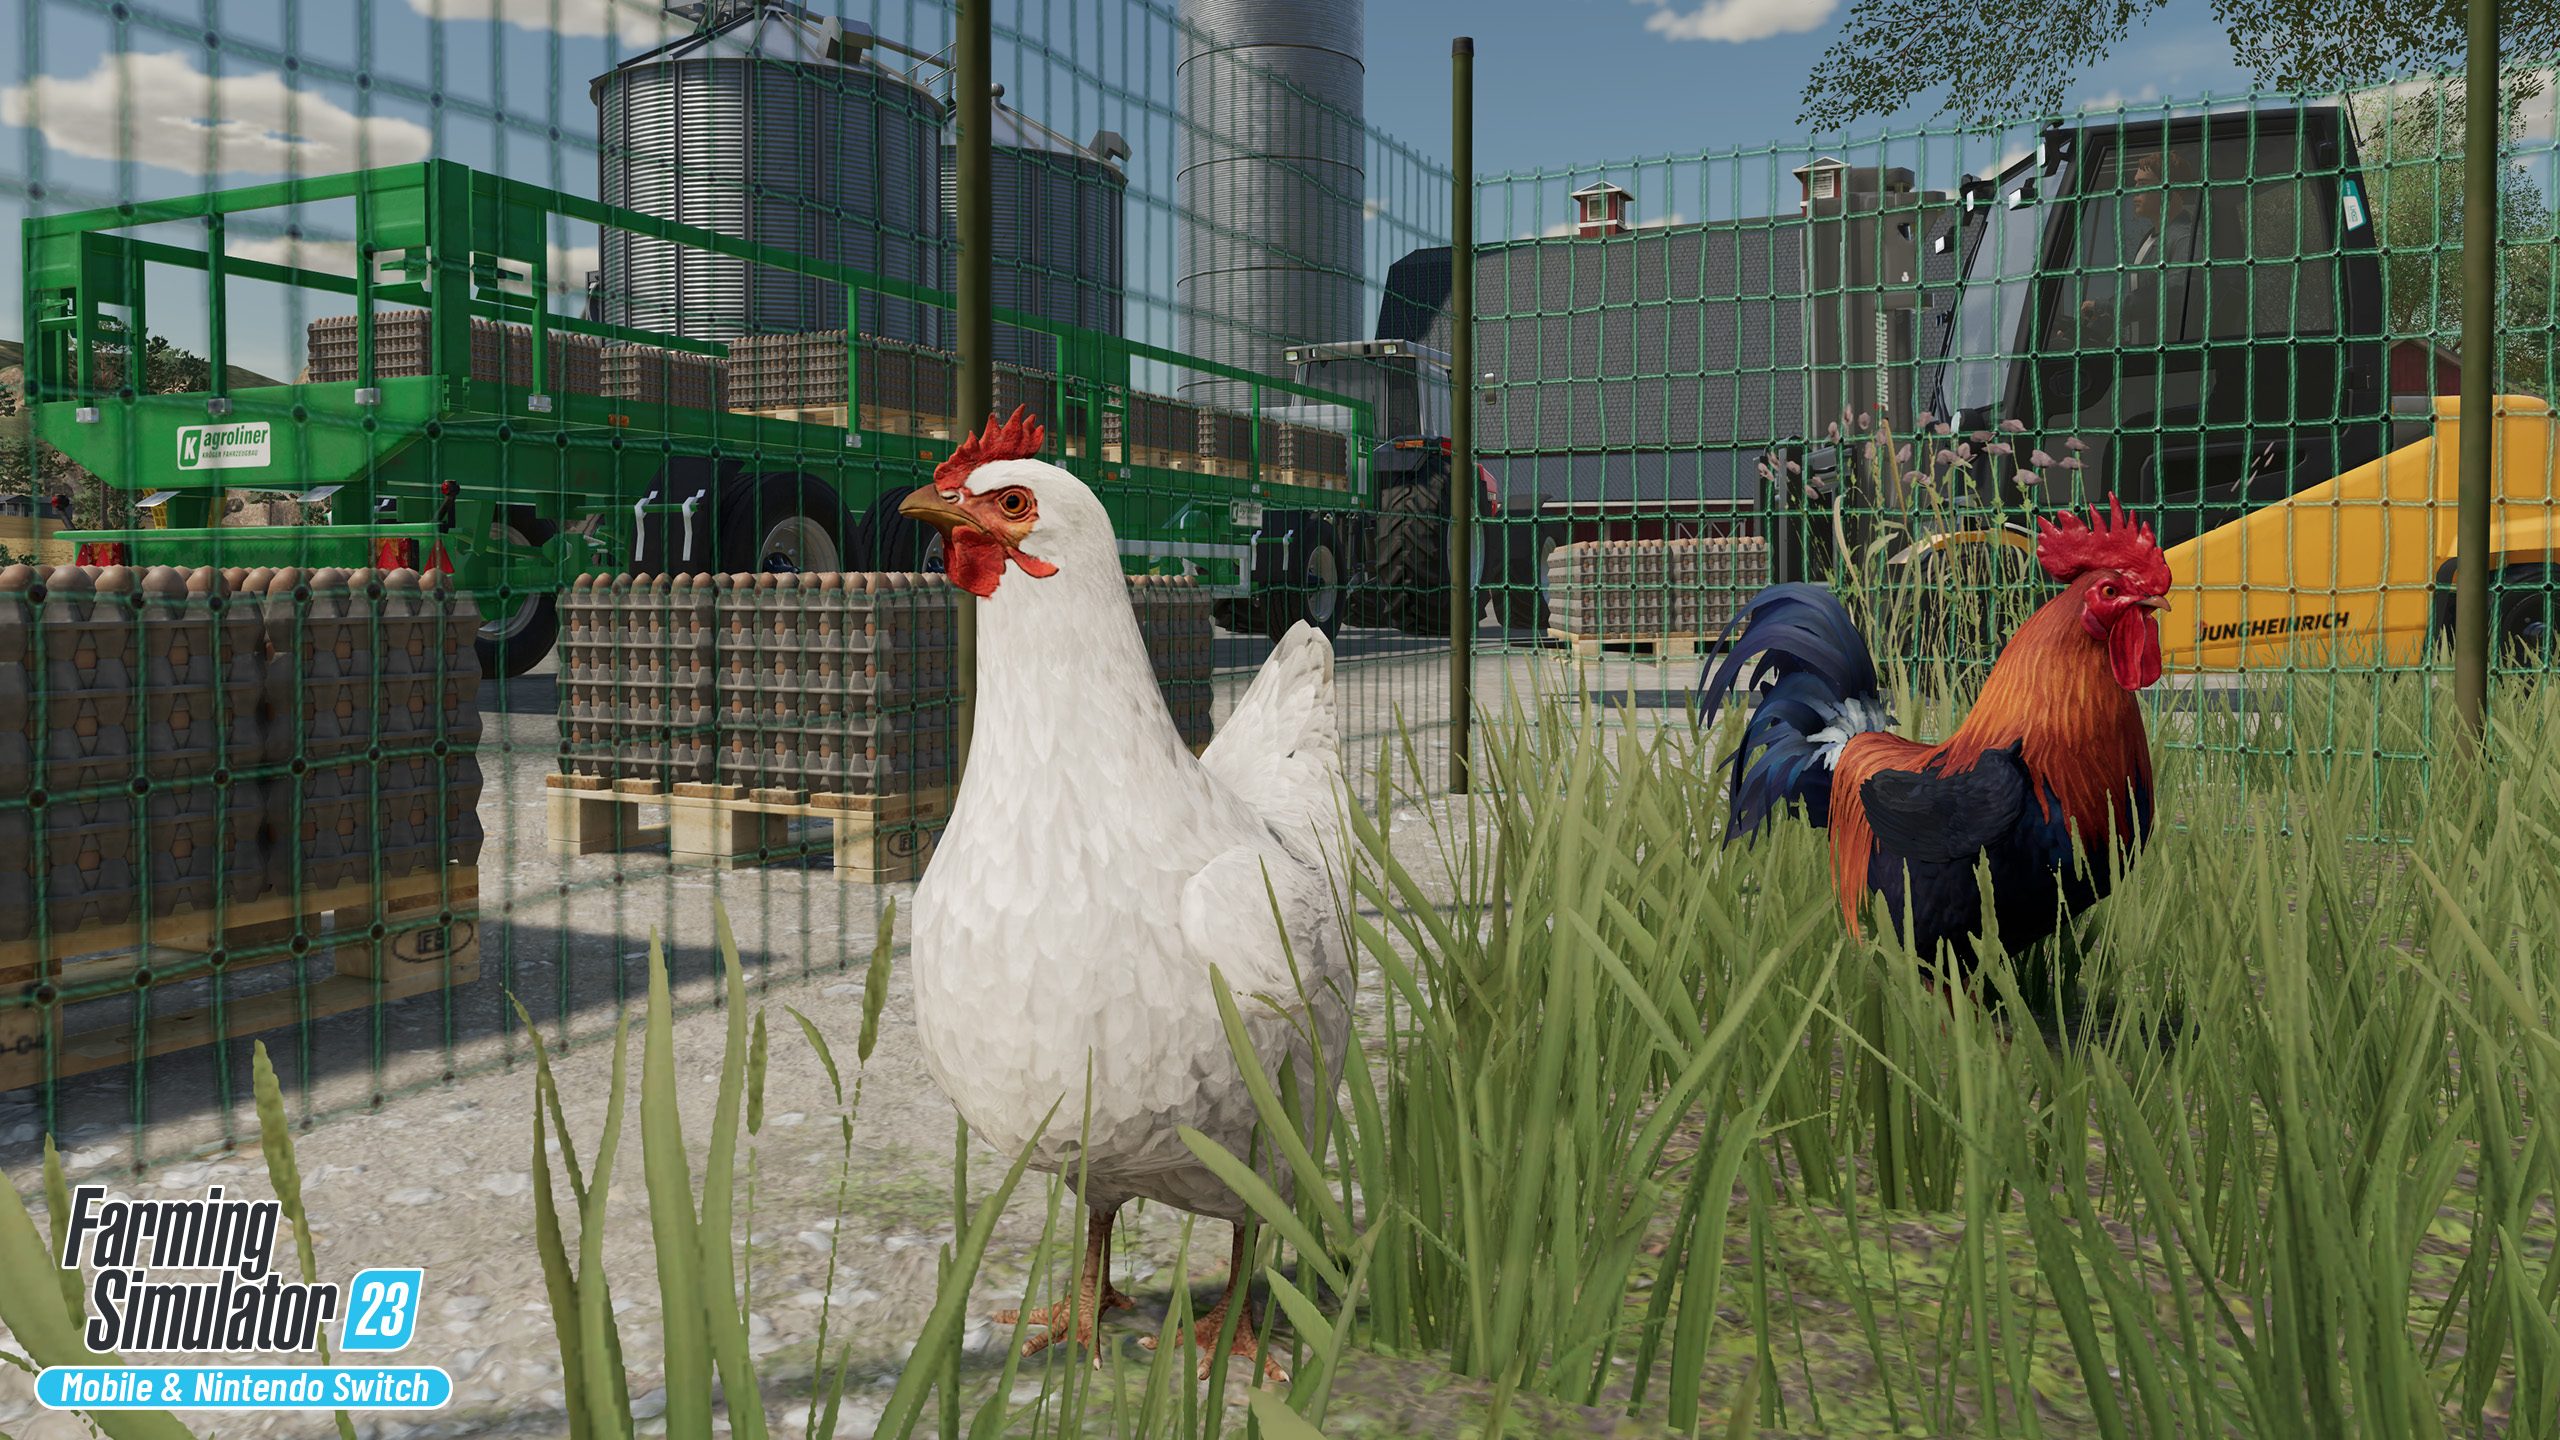 Landwirtschafts-Simulator 23 mit über 130 Maschinen auf Nintendo Switch